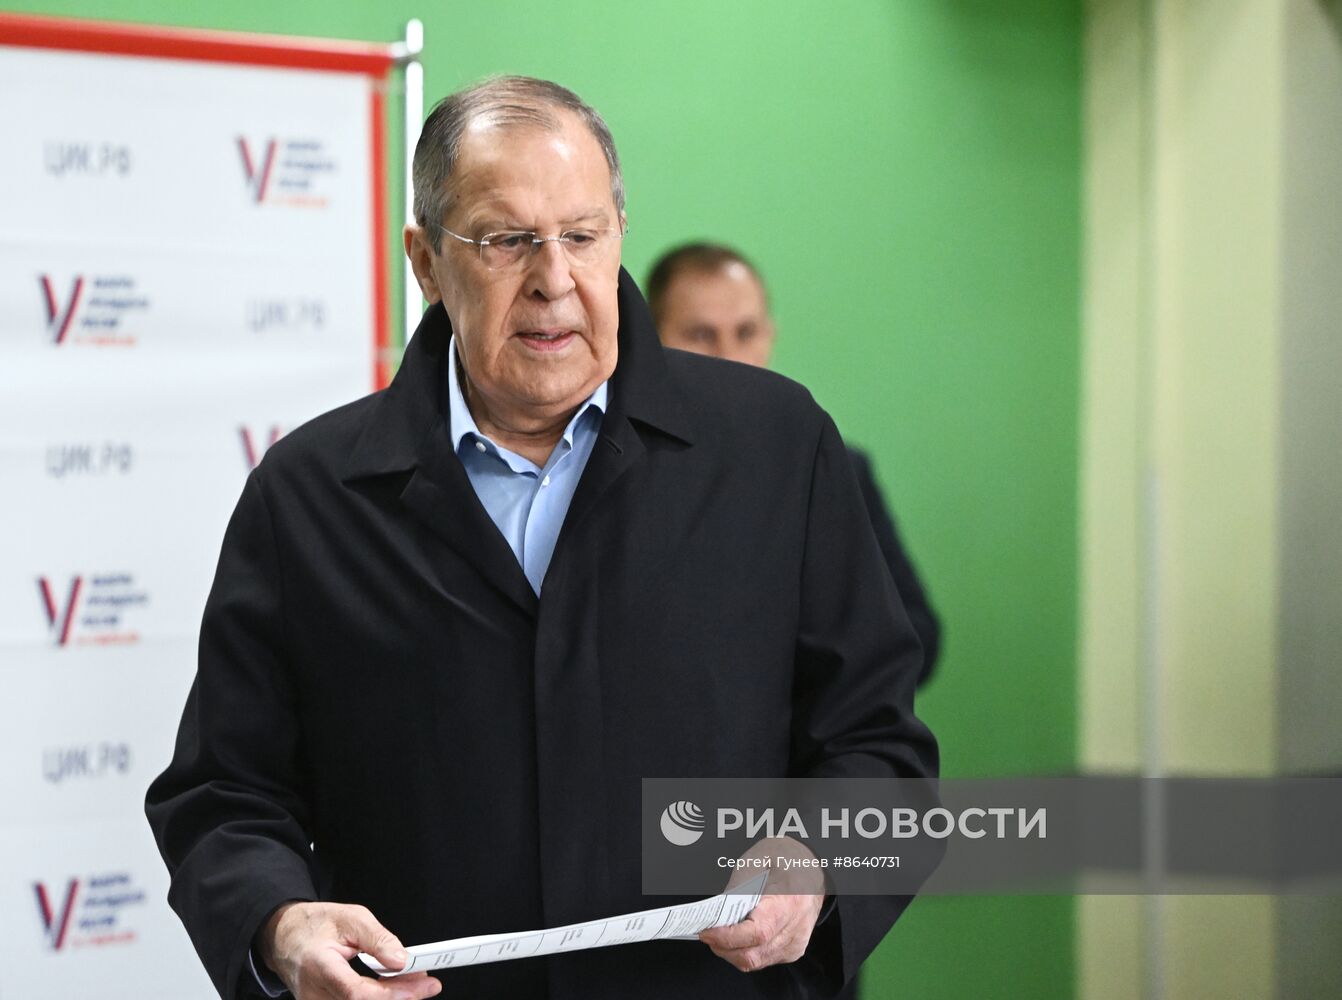 Глава МИД РФ С. Лавров проголосовал на выборах президента РФ